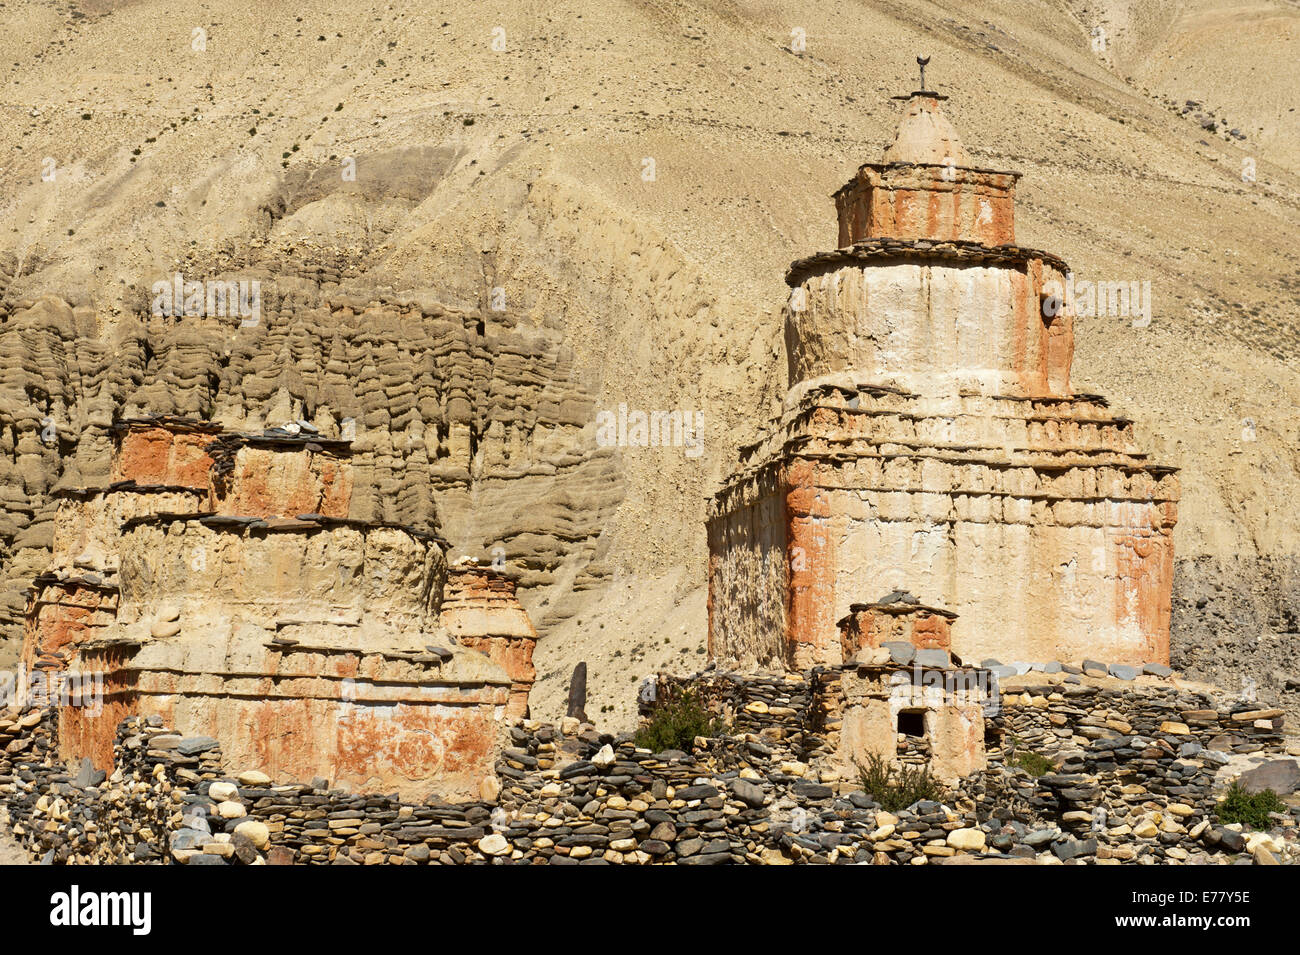 Le bouddhisme tibétain, weathered stupa dans paysage érodé, Ghami, Upper Mustang, Népal Banque D'Images